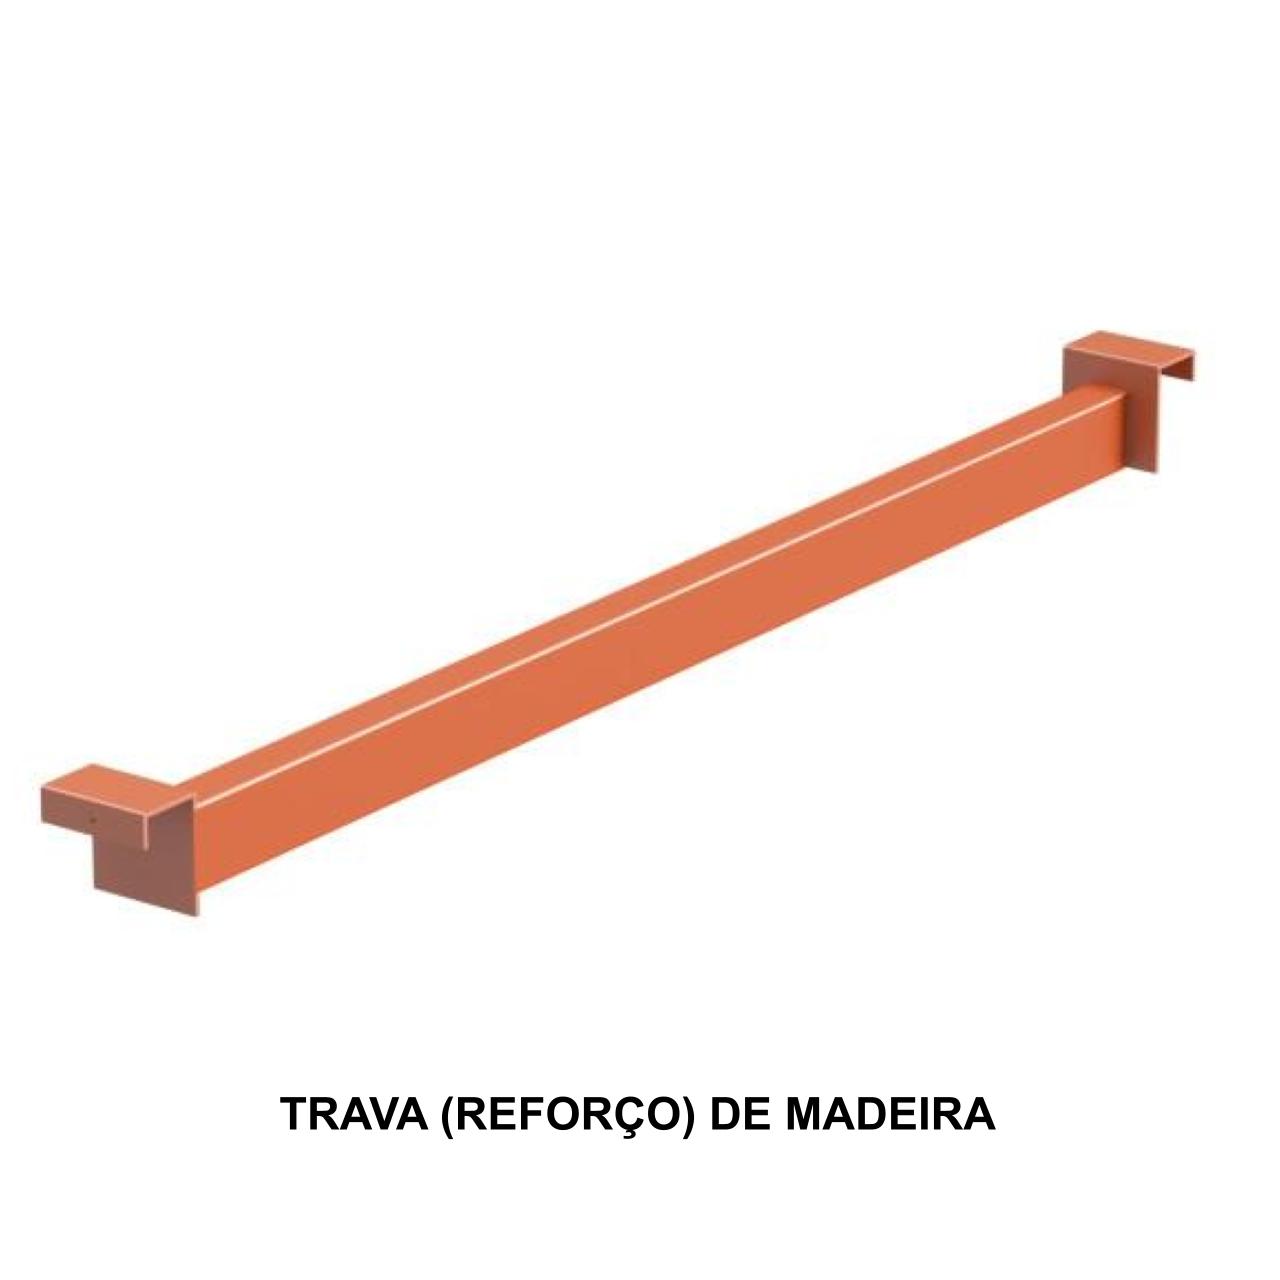 TRANSVERSINA – REFORCO P/ PLANO DE MADEIRA 720X36MM – LRJ – 11086 Araguaia Móveis para Escritório